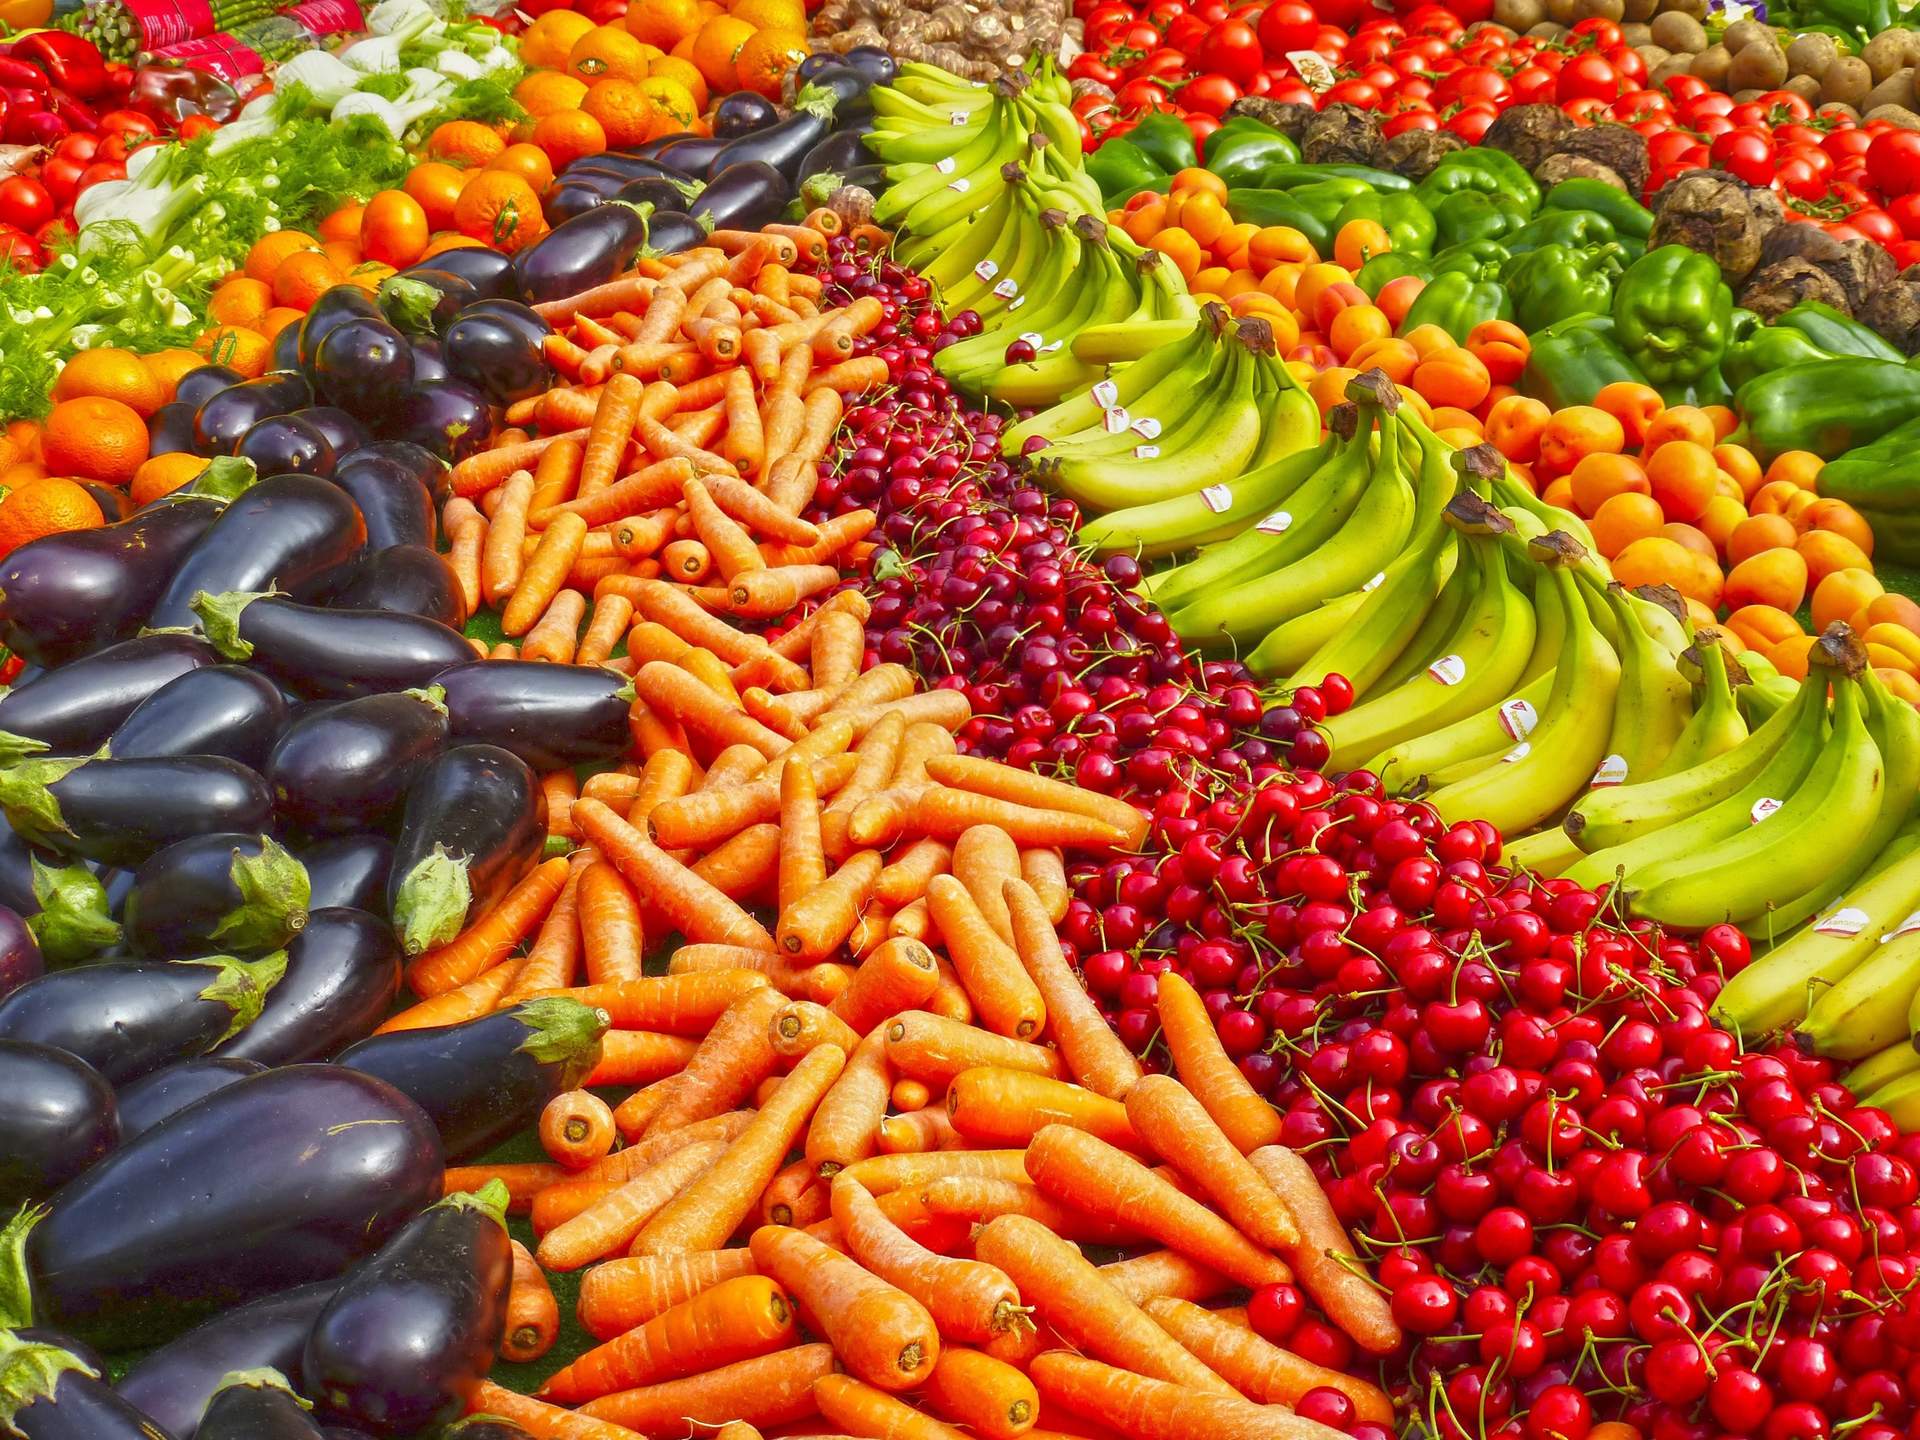 Uno de cada tres alimentos básicos suben de precio en marzo, más en frutas y verduras, según Facua